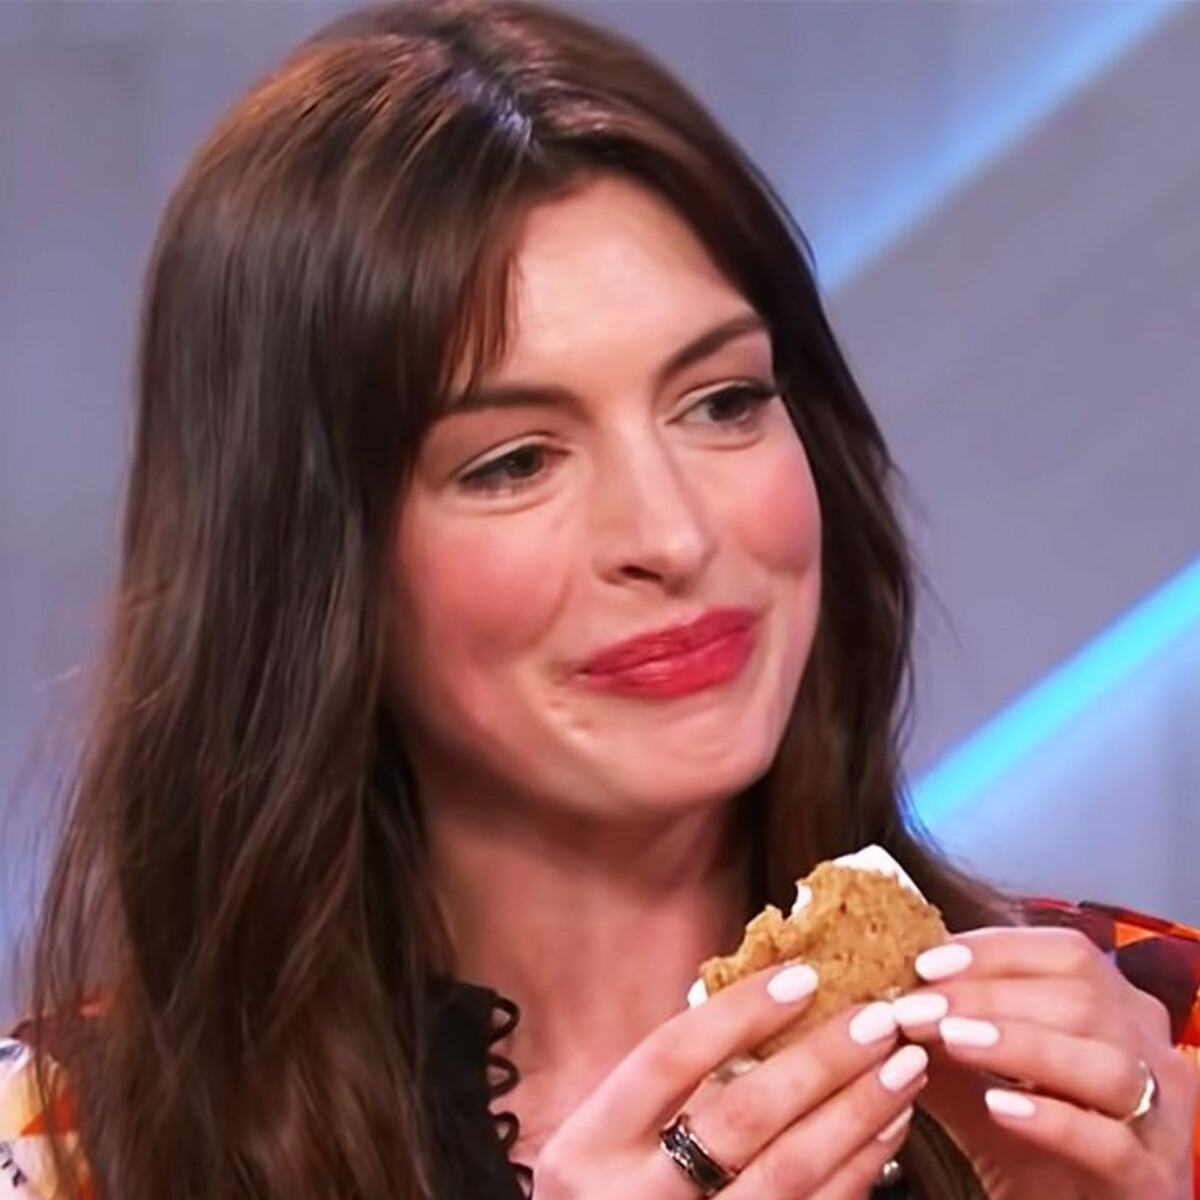 Anne Hathaway cupcake-evő trükkje egyszerűen zseniális